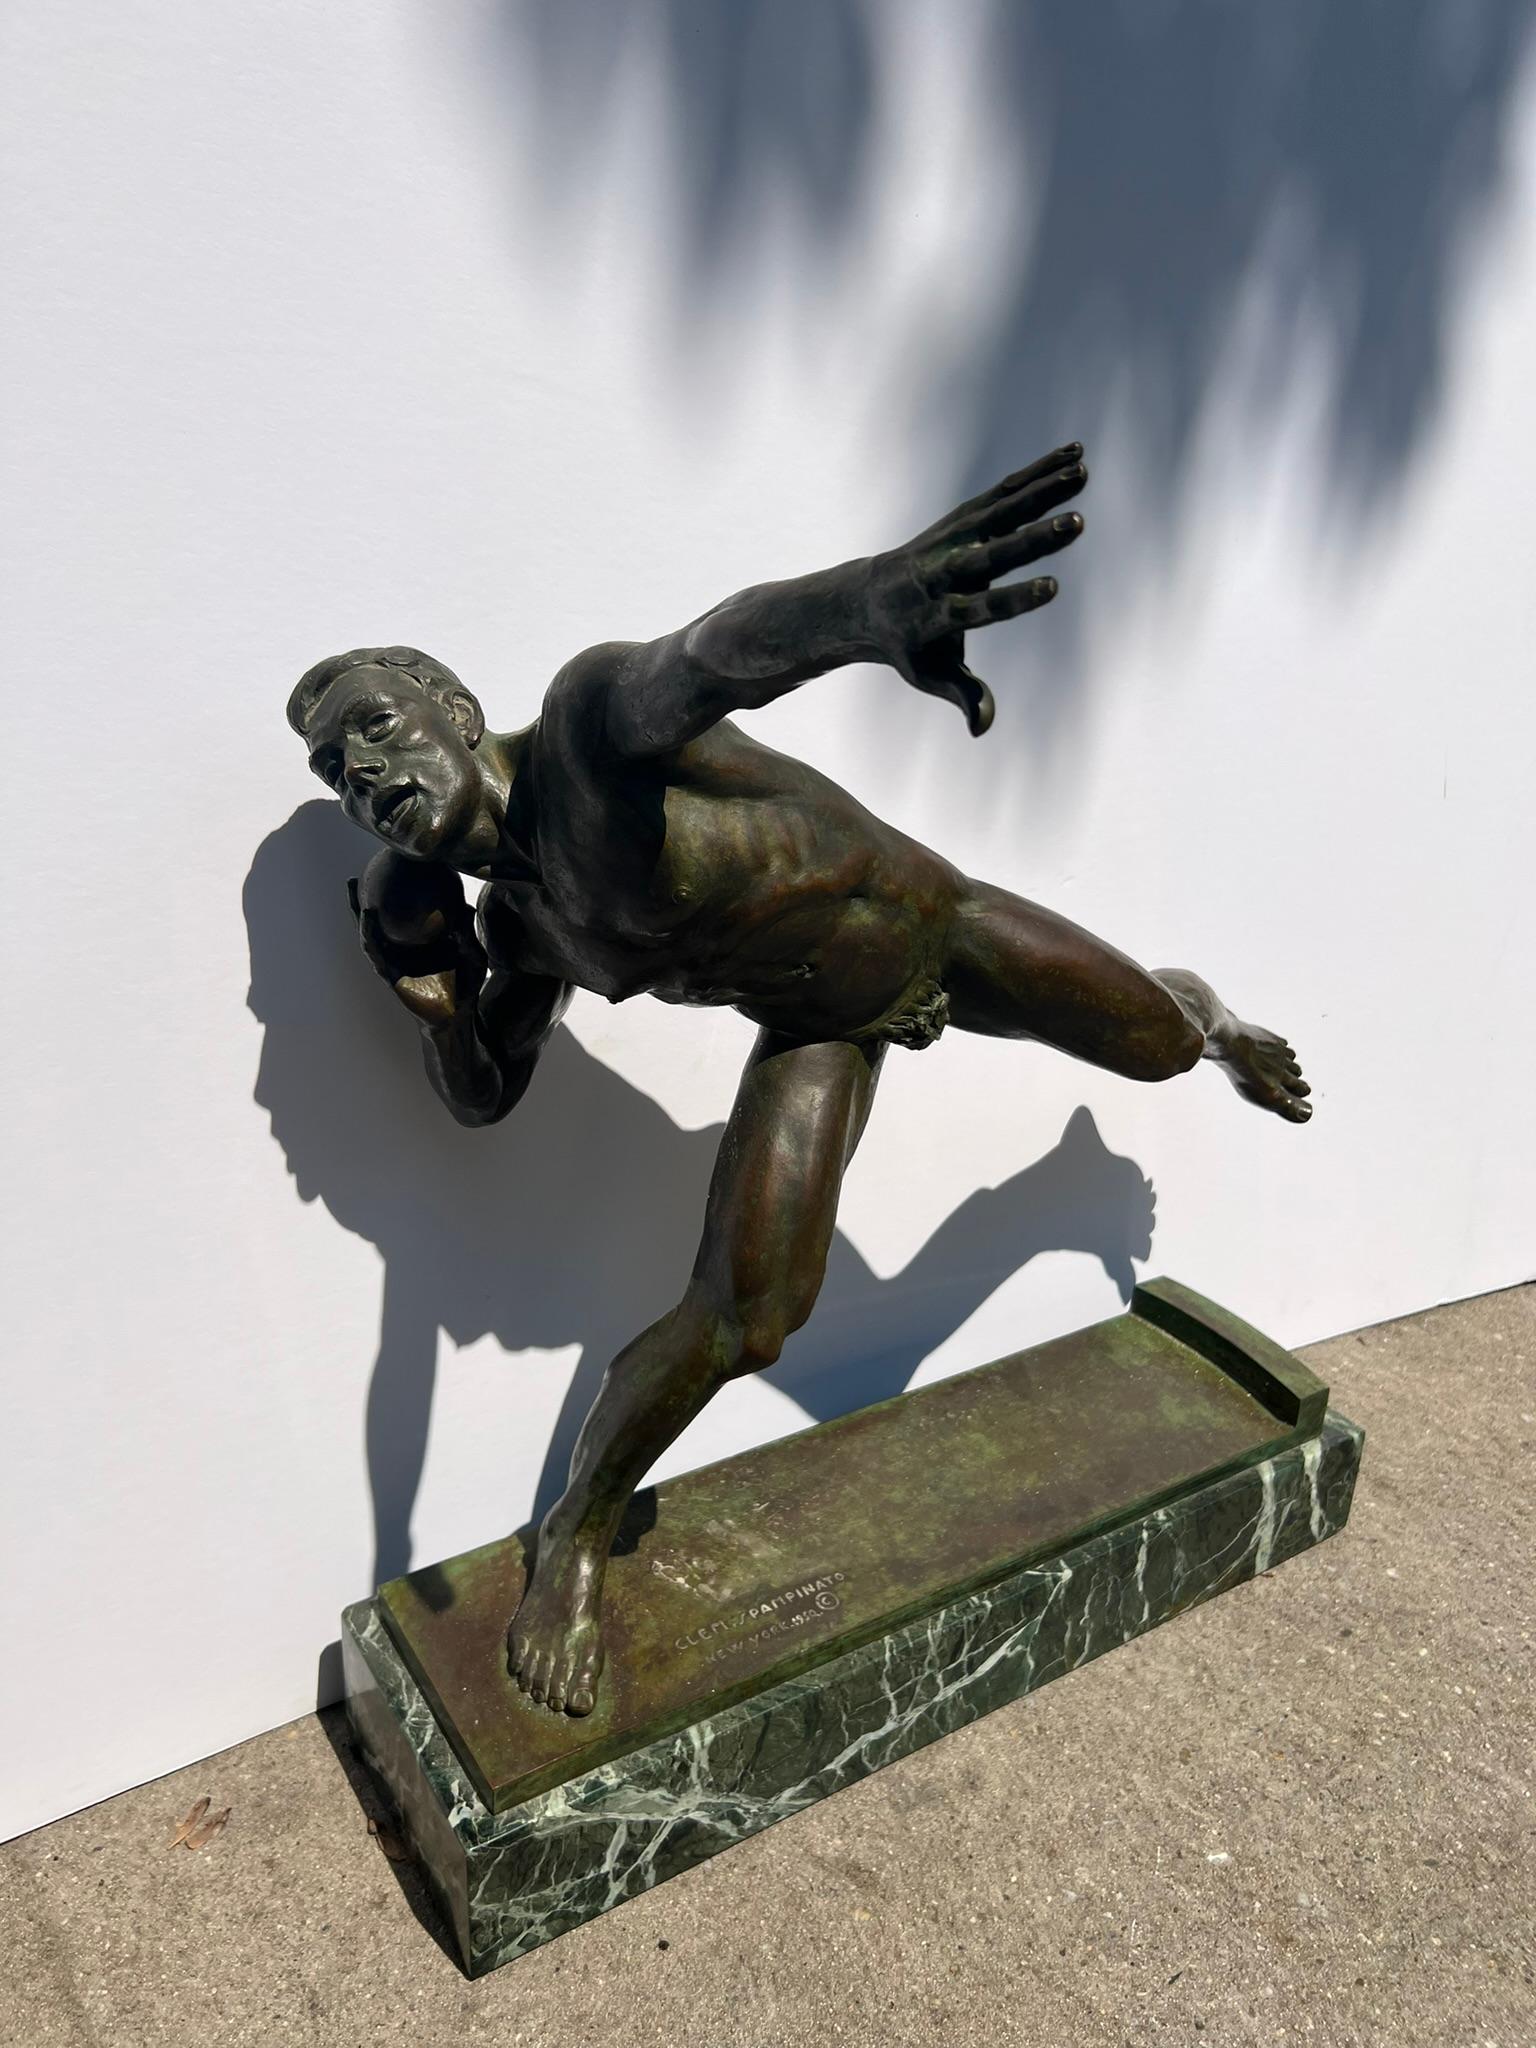 Clemente Spampinato Figurative Sculpture – Amerikanische Bronzeskulptur eines männlichen nackten Athleten während eines Schuhputzes.